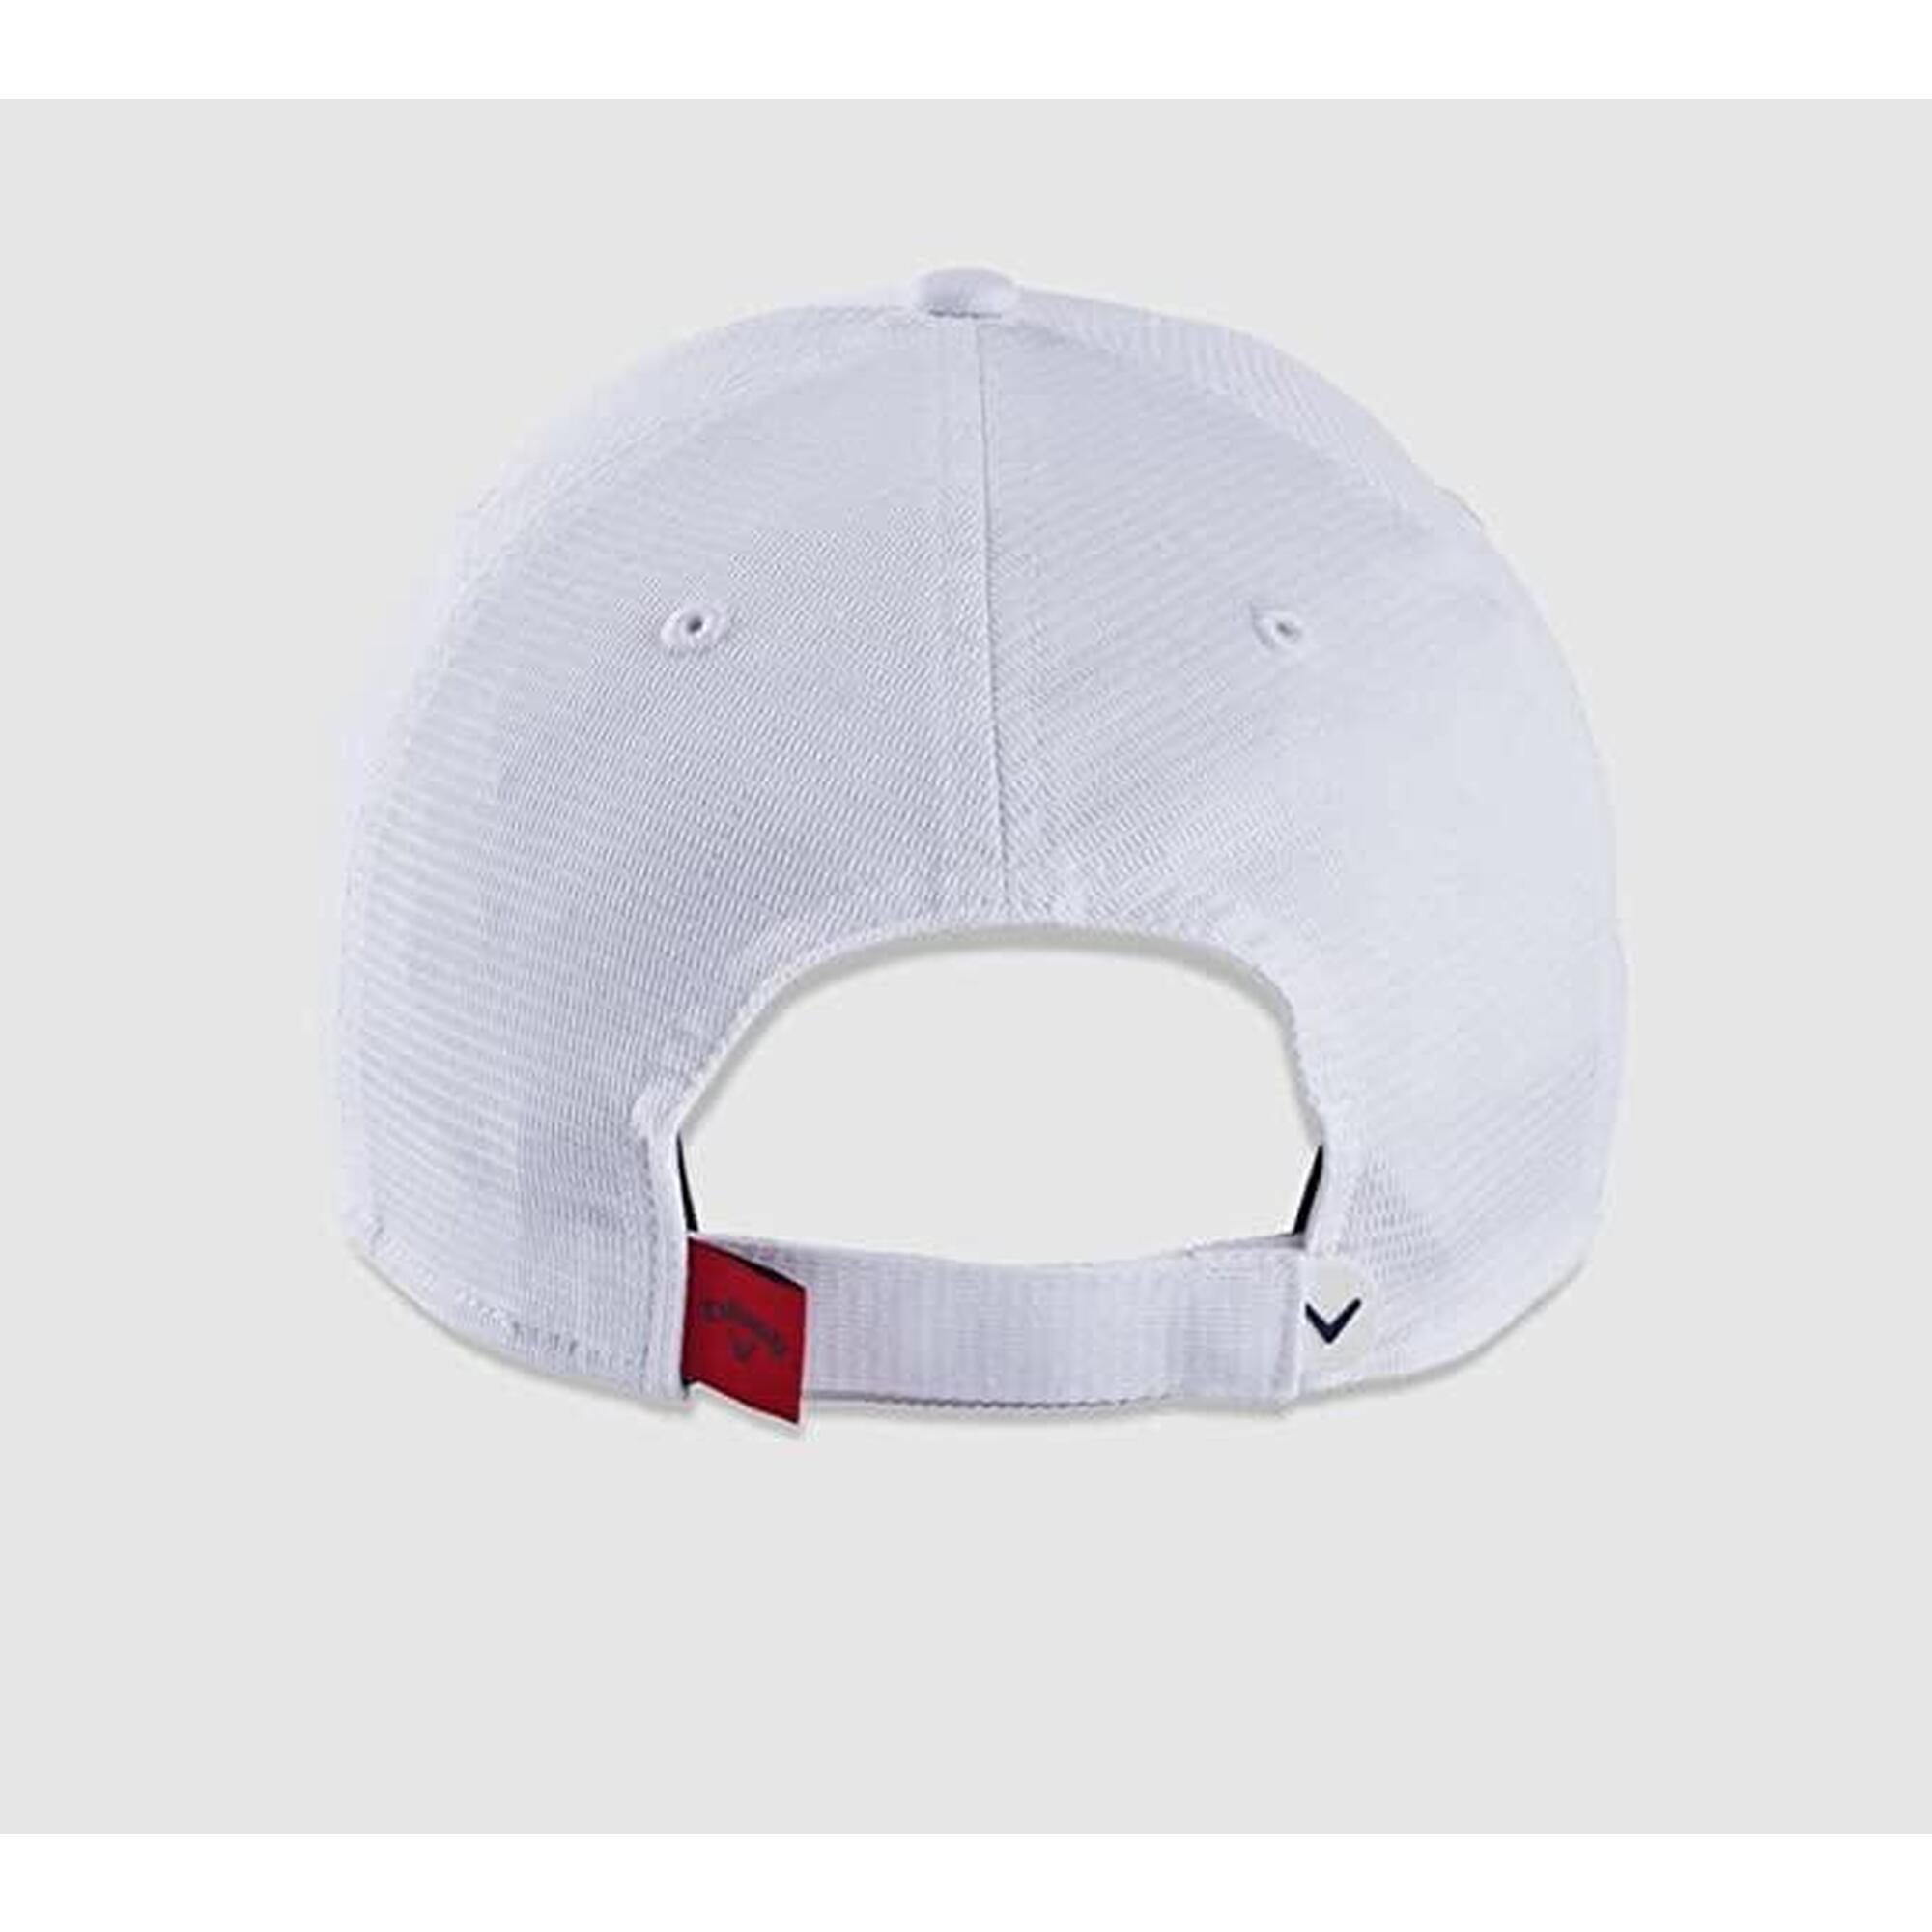 男士液態金屬高爾夫球帽 - 白色/藍色